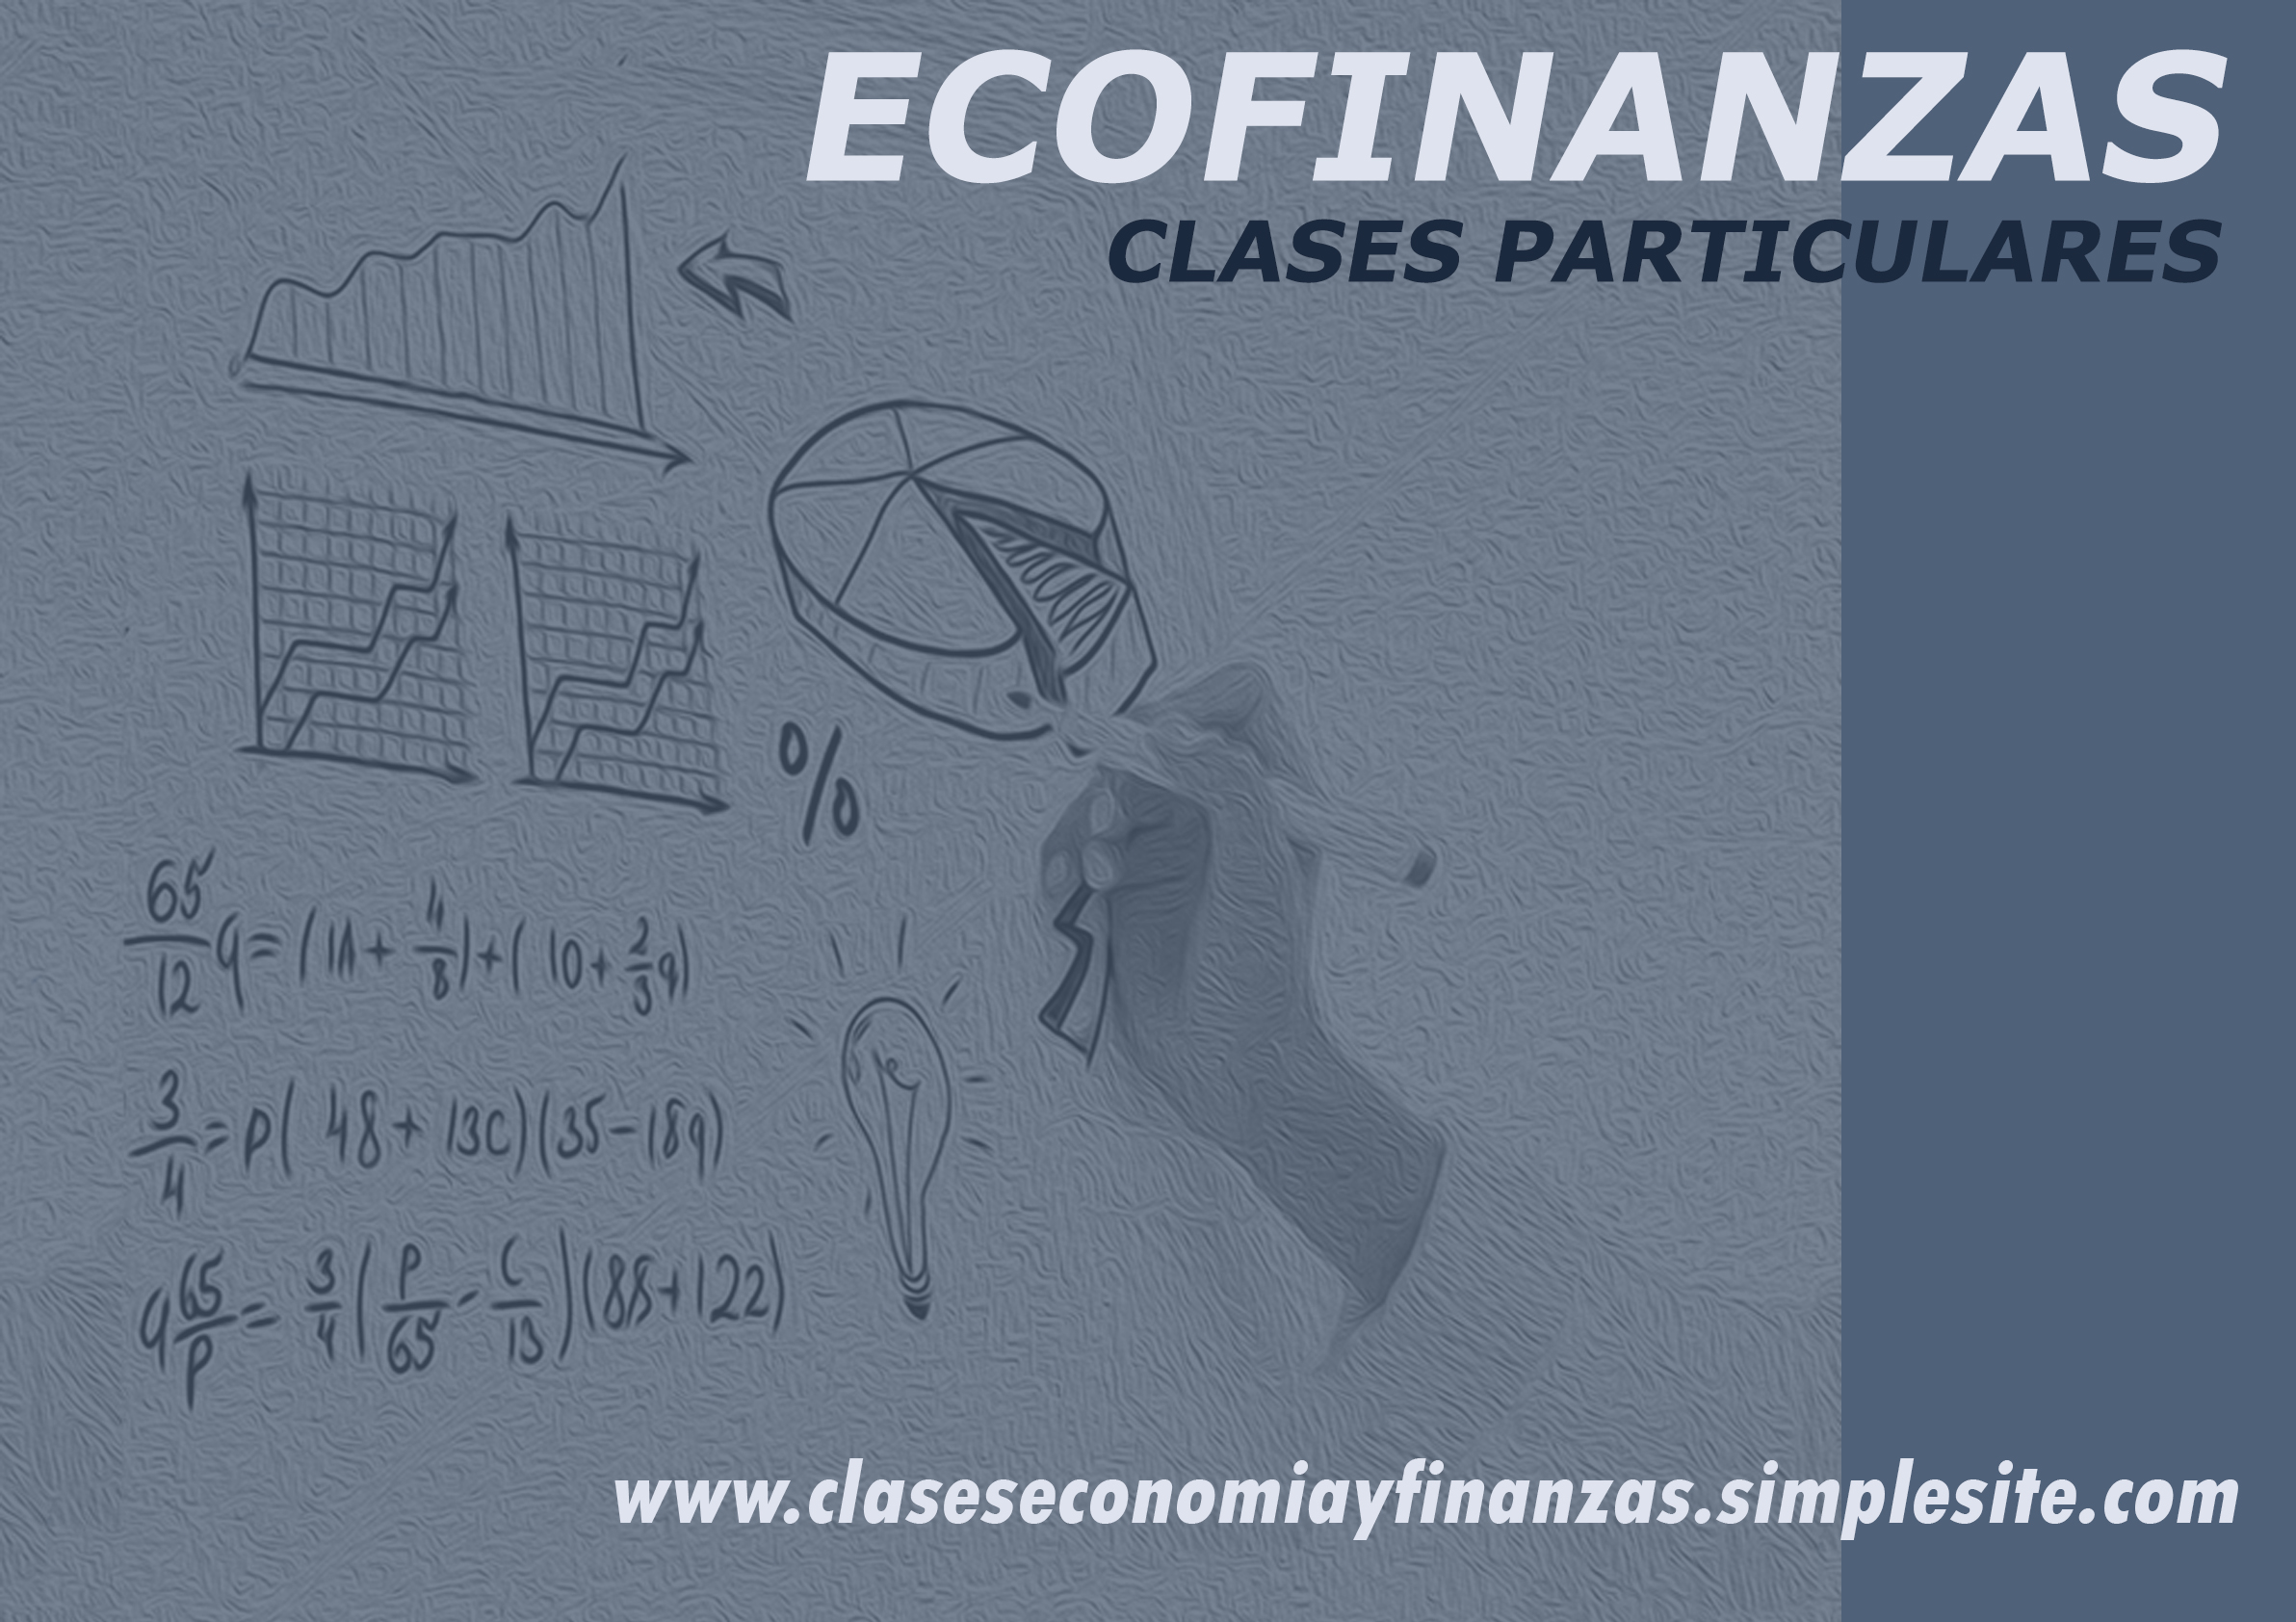 Ecofinanzas